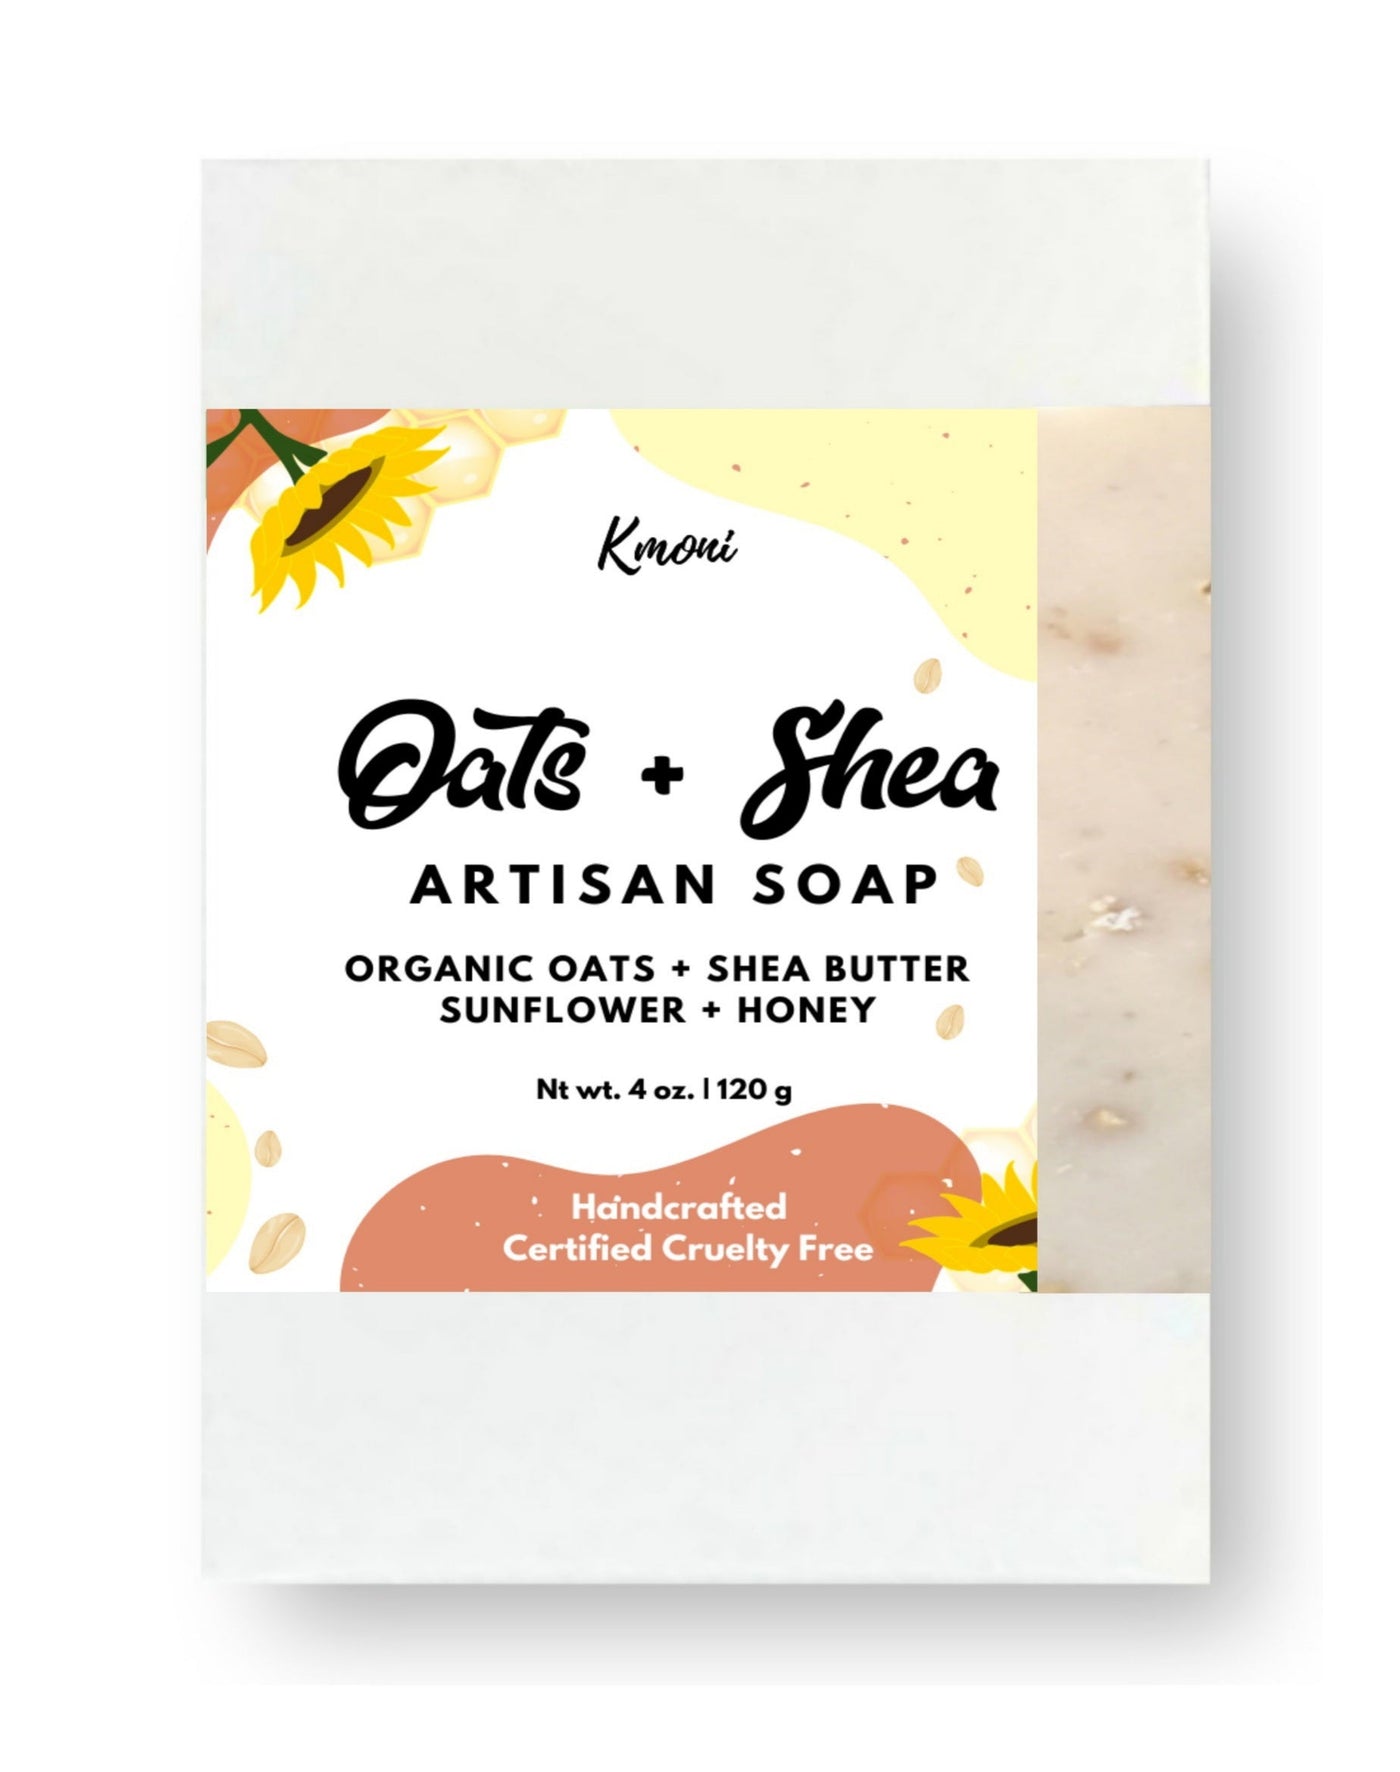 Oats & Shea Artisan Soap